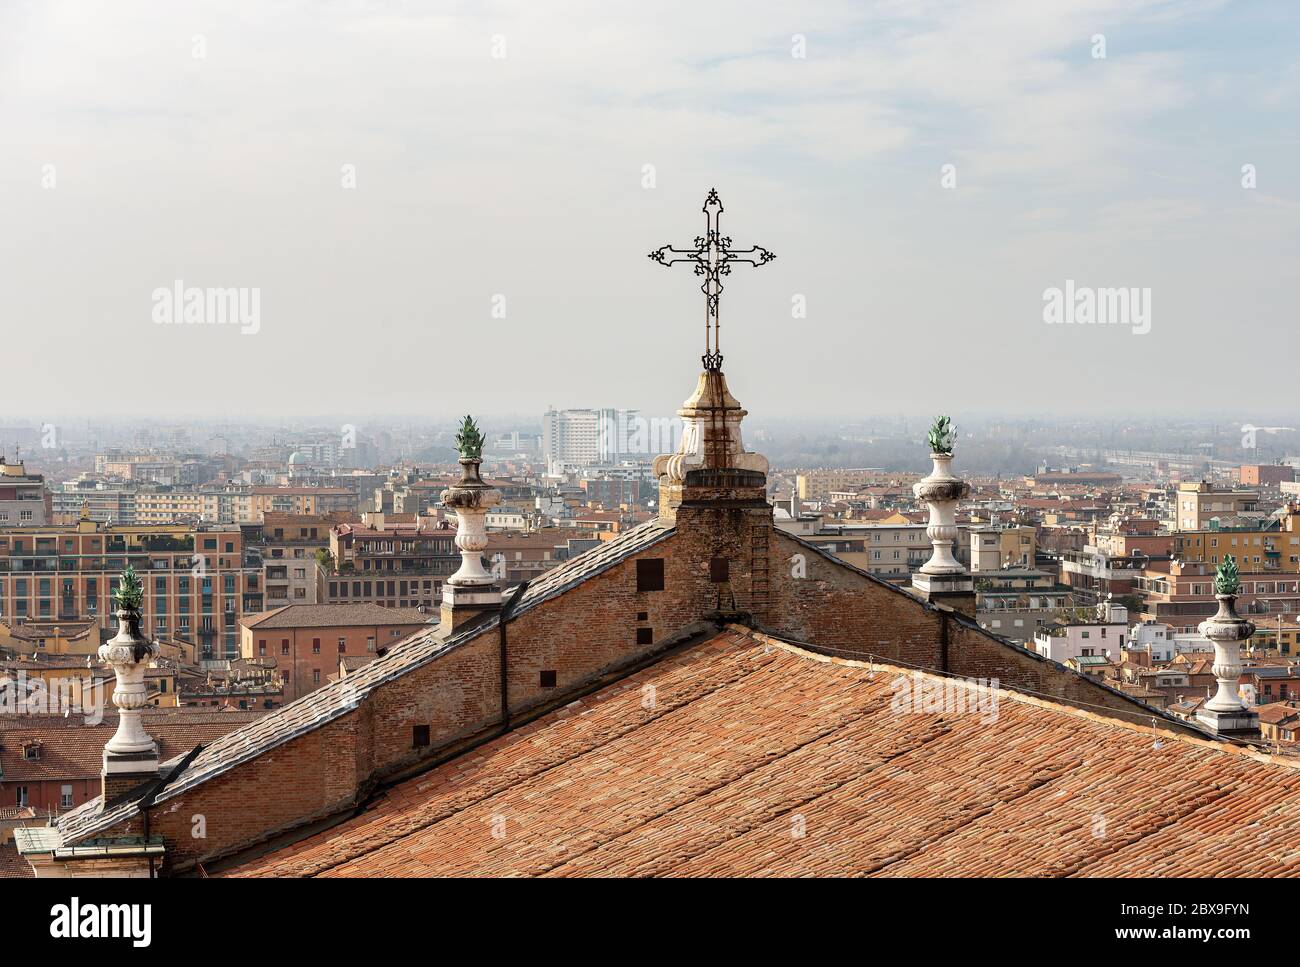 Paysage urbain de Bologne vu du clocher de la cathédrale métropolitaine de San Pietro (910 - XVIII siècle). Emilie-Romagne, Italie, Europe Banque D'Images